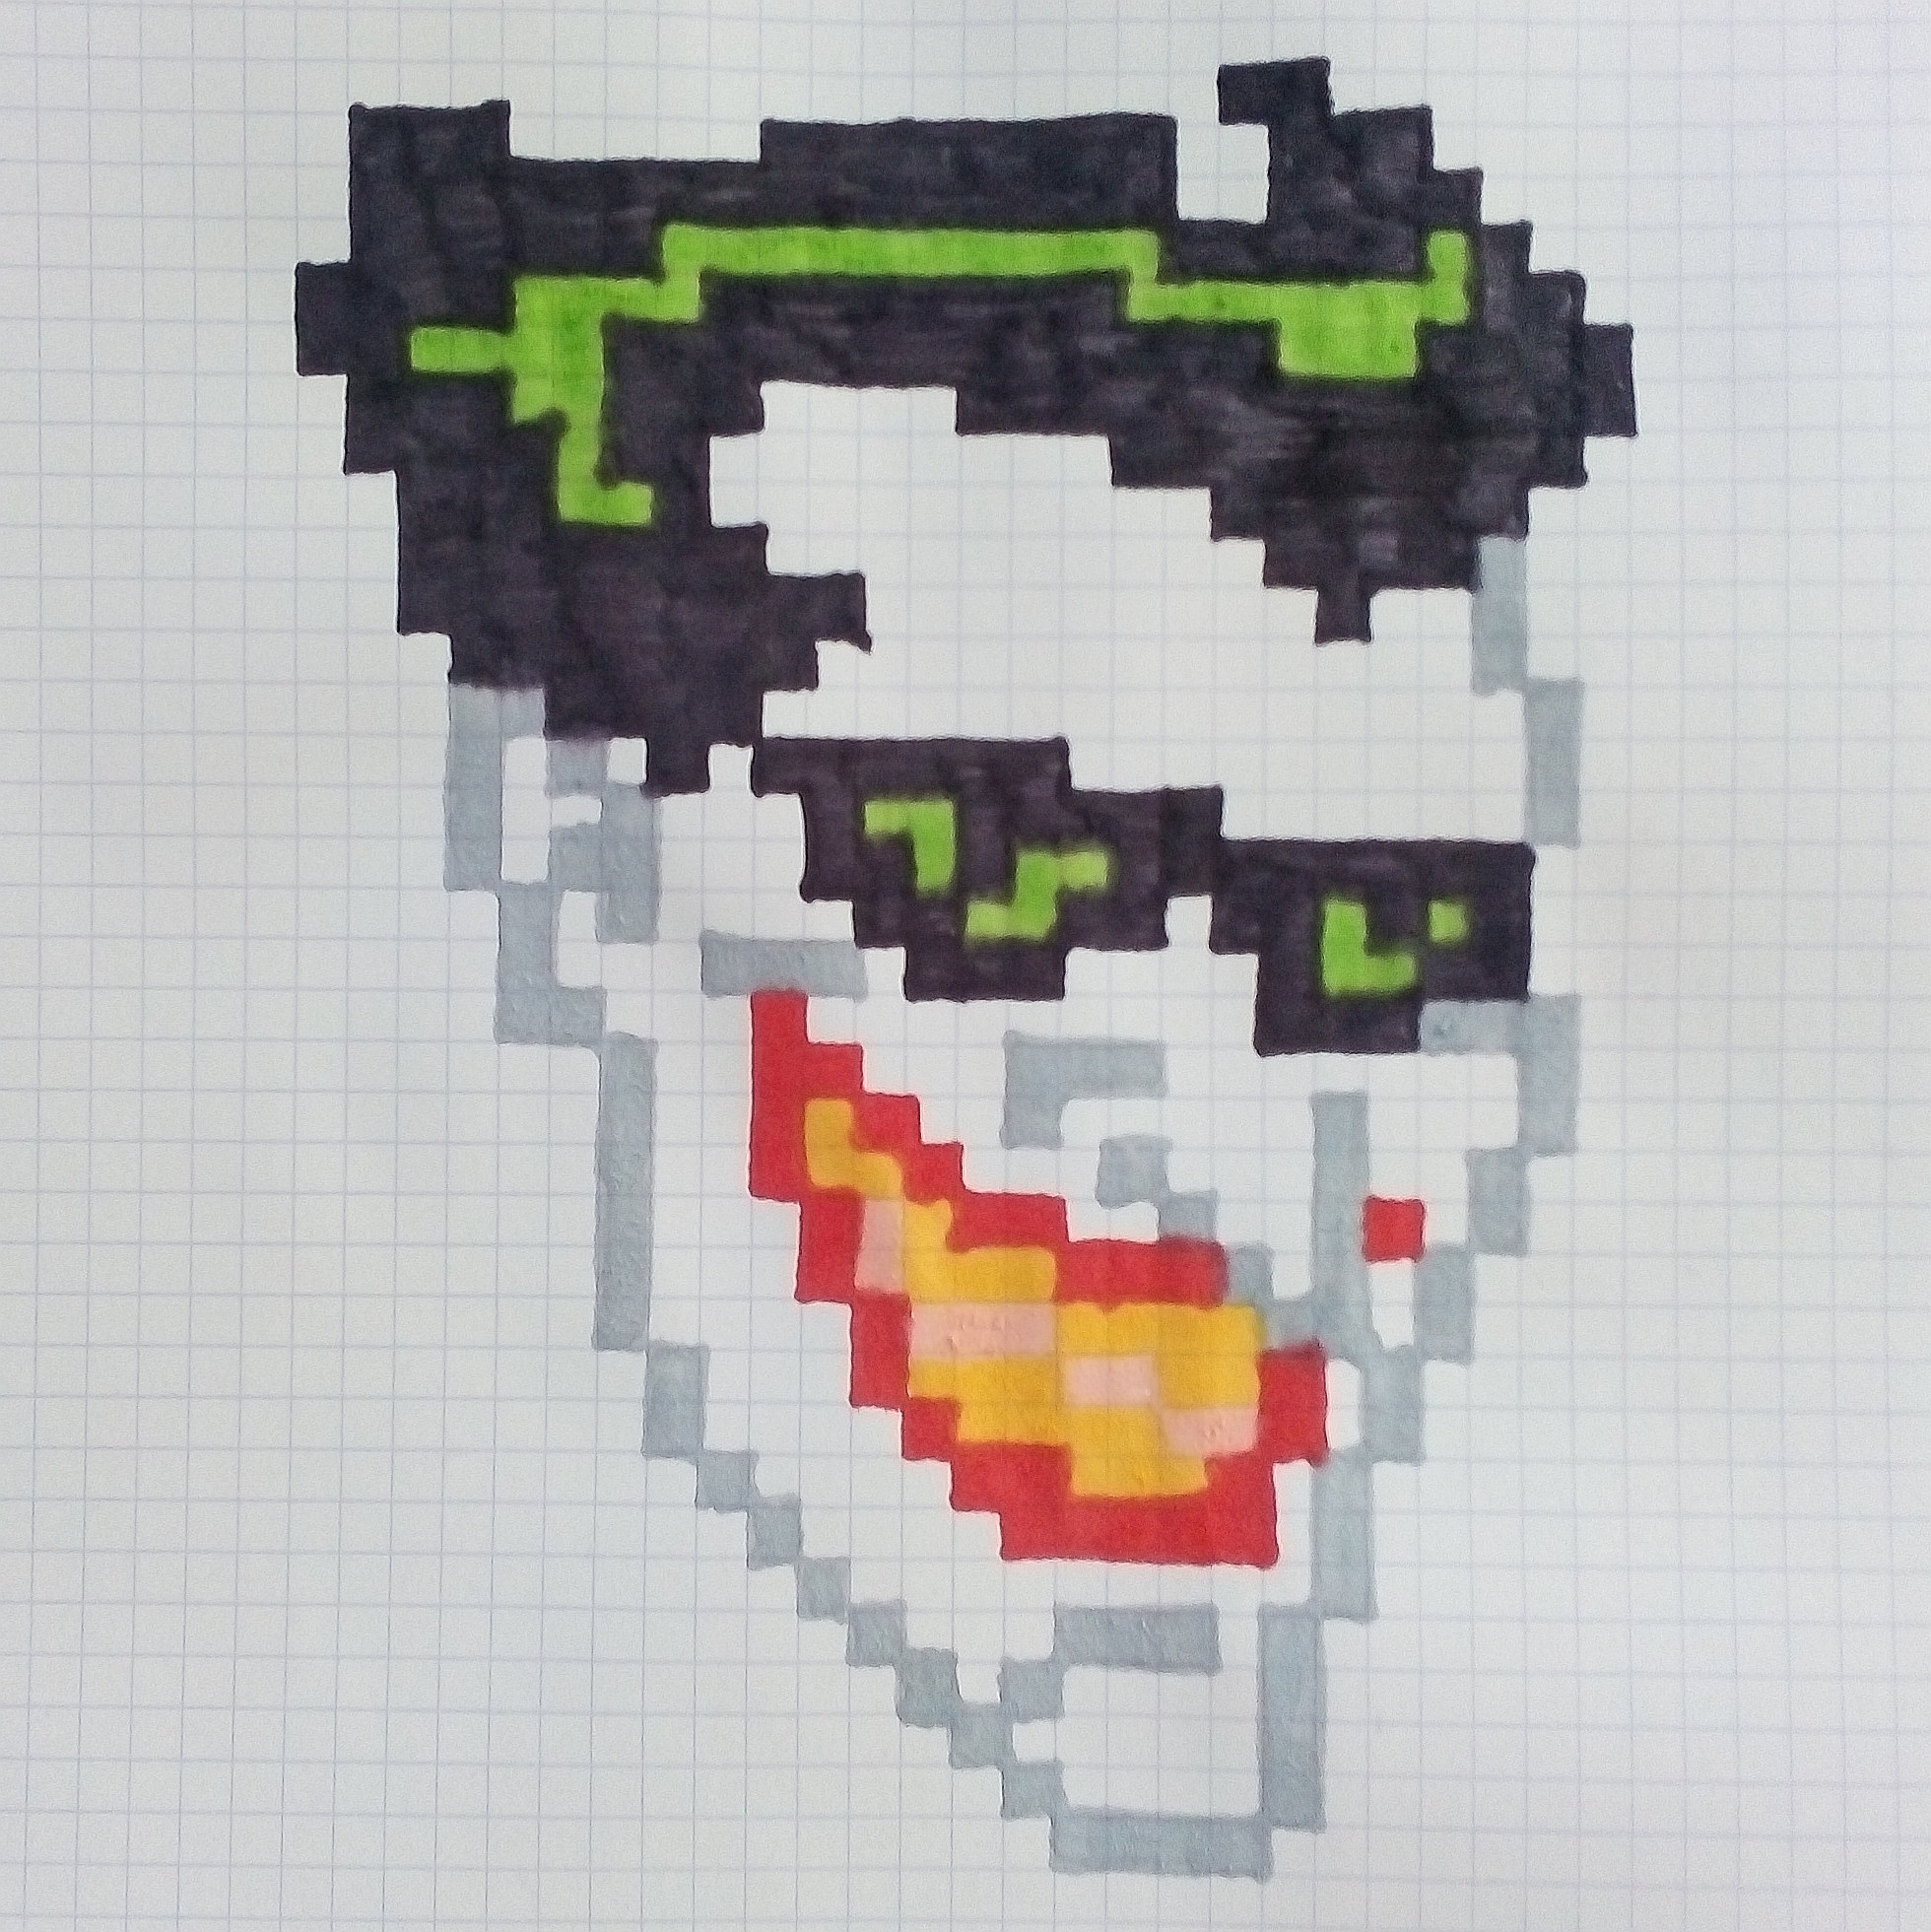 Totem Coringa em pixel art | The Joker